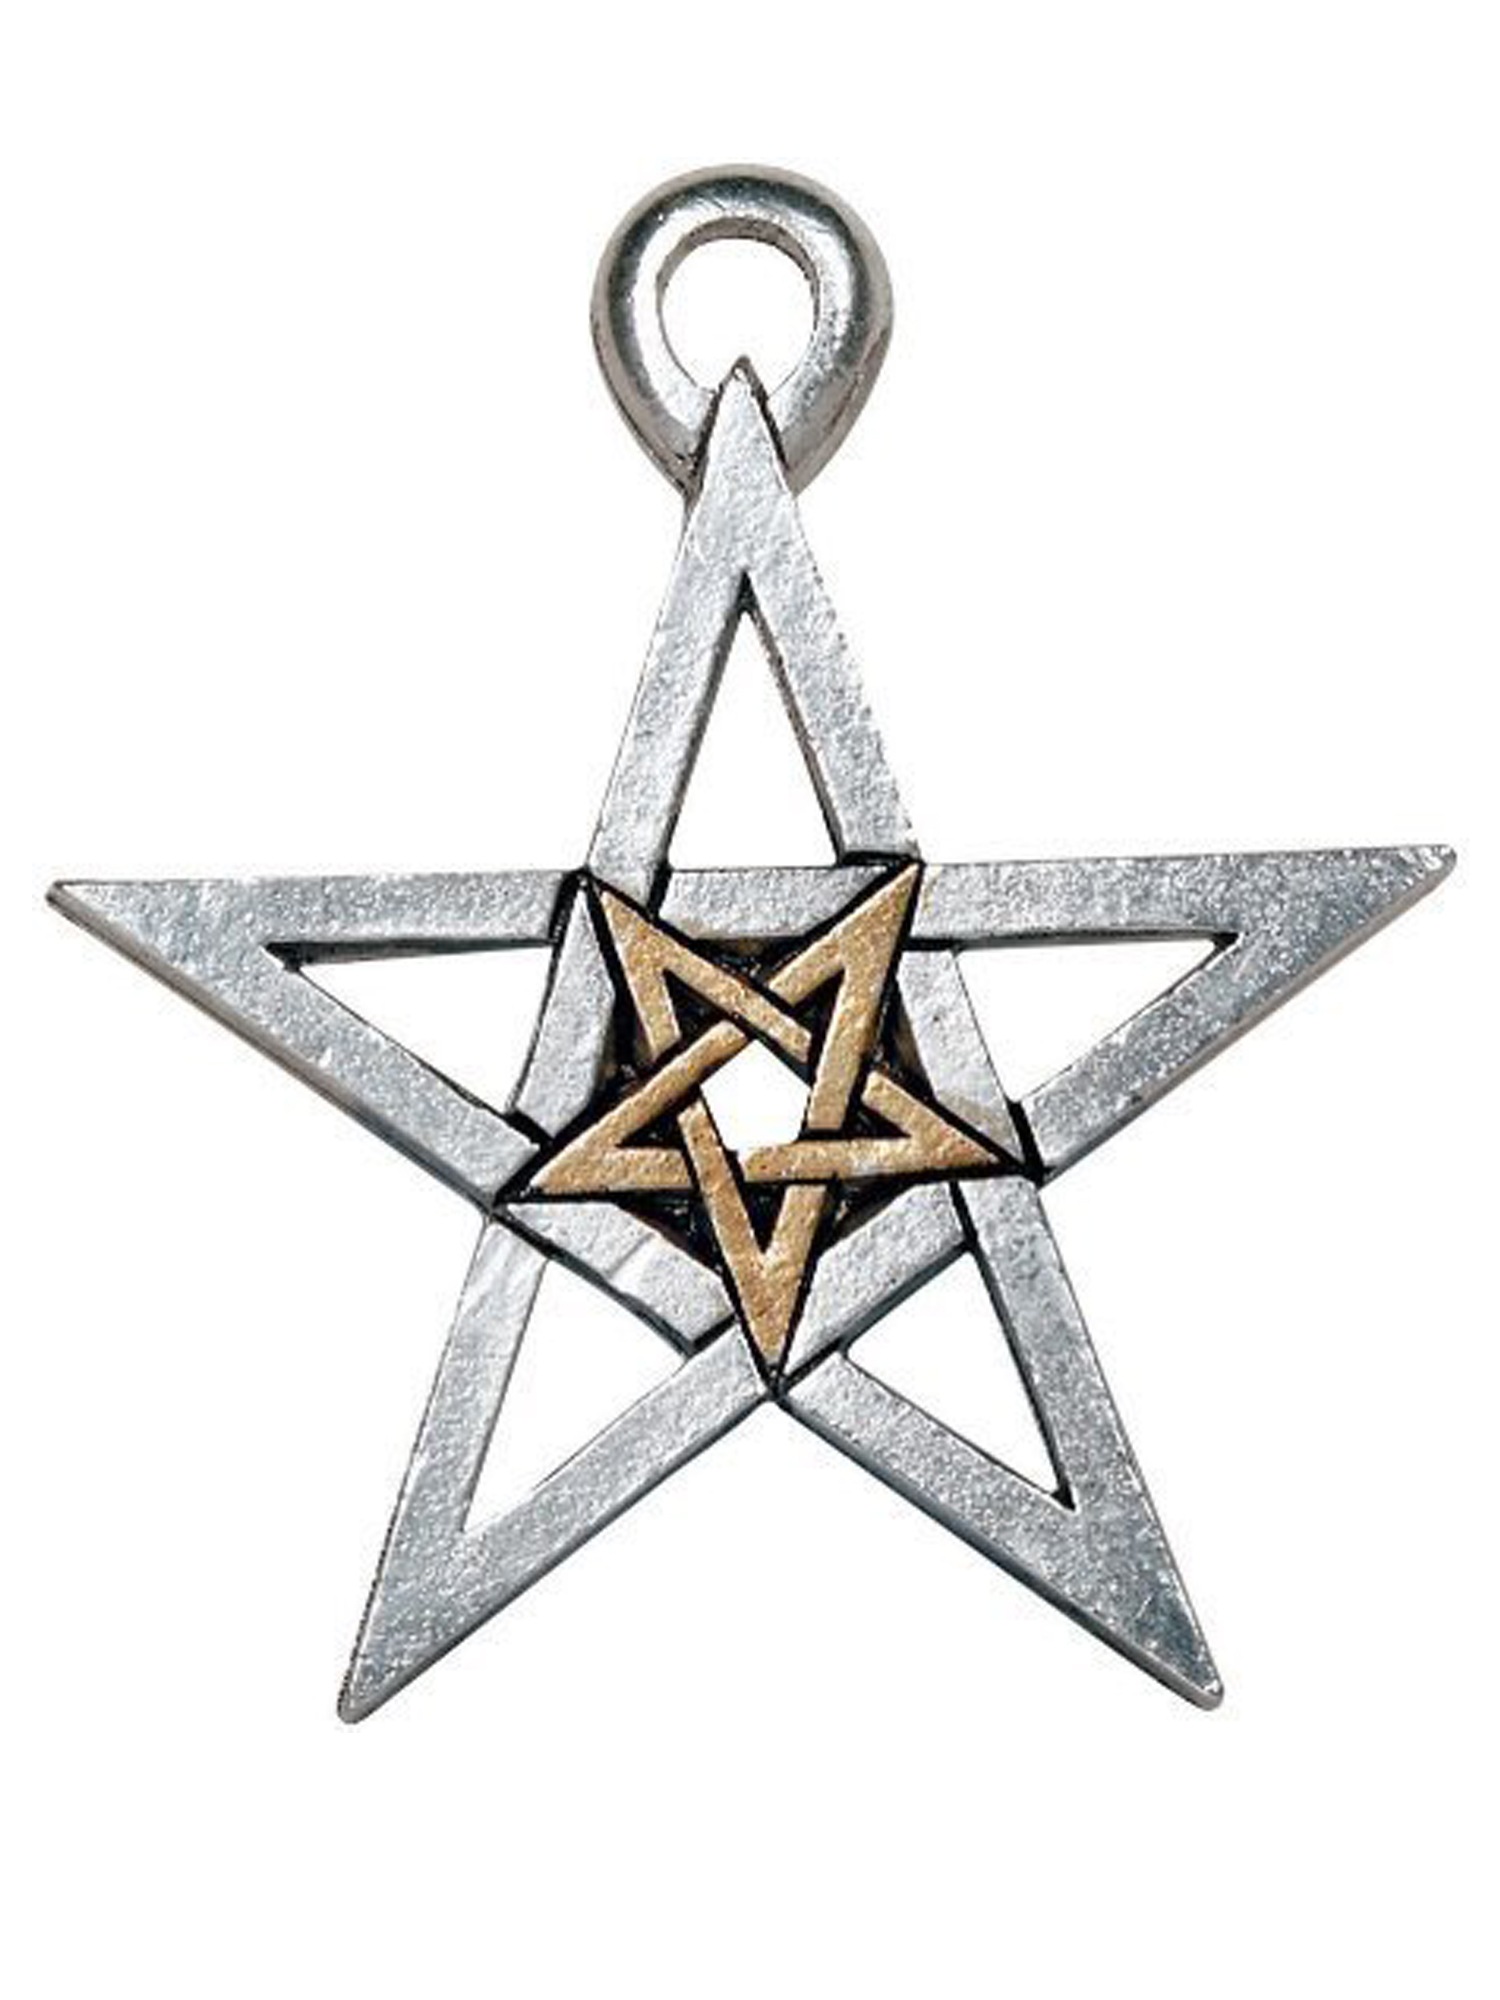 Pentagramm echt massiv 925 Silber Schutz Amulett 40 mm MagieTalisman gothic WGT